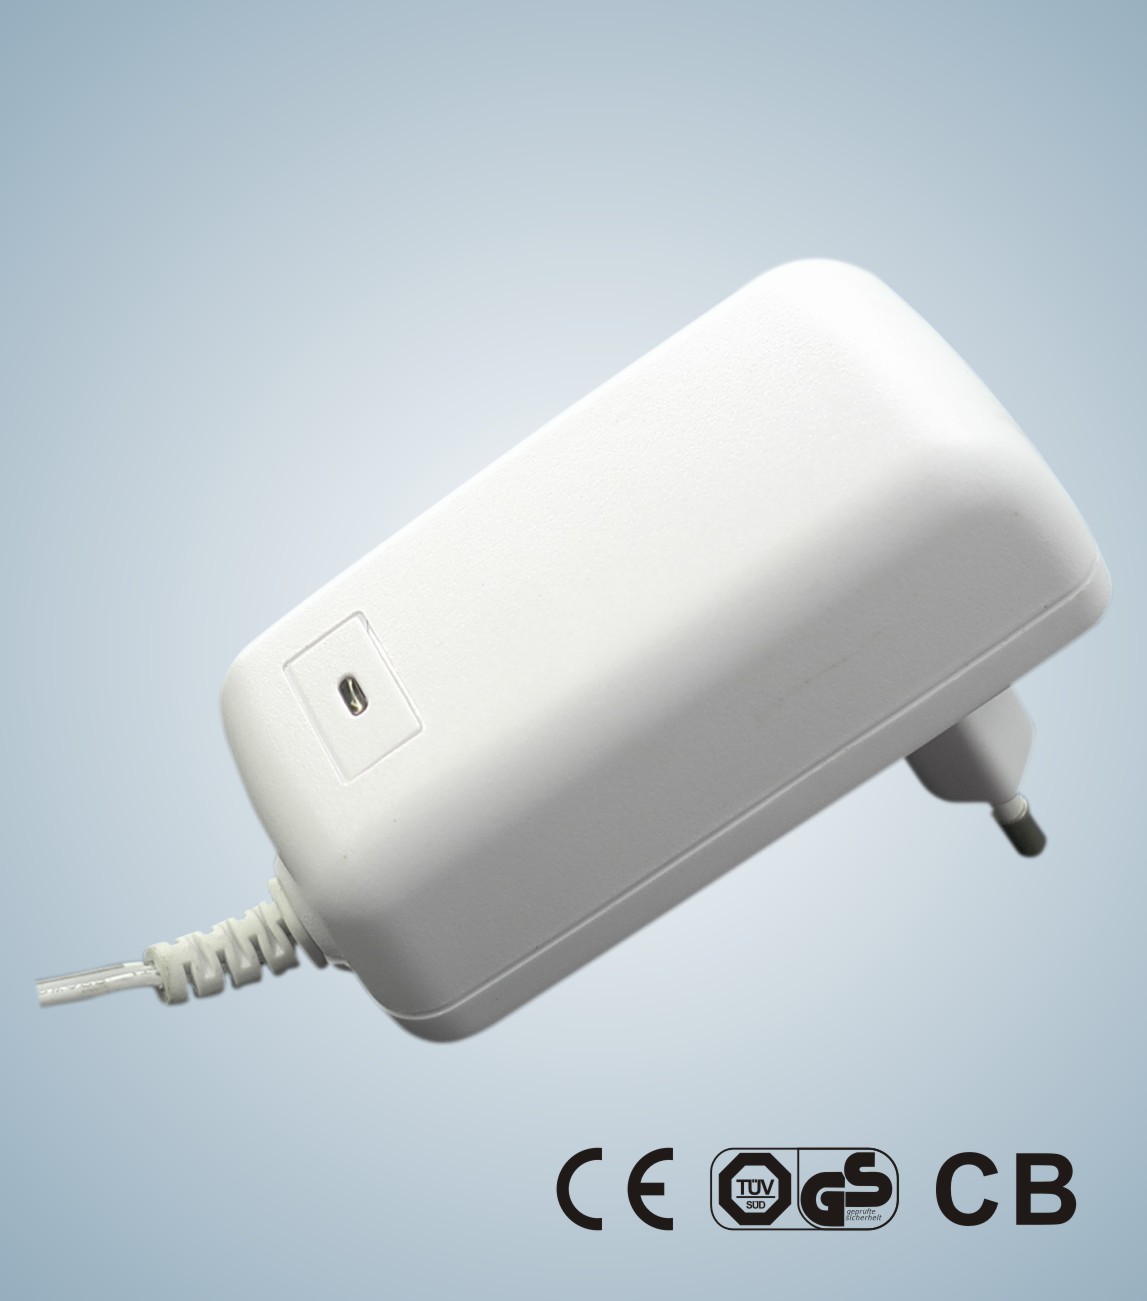 adaptateurs de puissance de commutation de 20W KSAP020xxxyyyyHEC avec des CB de 12VDC 0.1-2A, CE, approbation de sécurité de GS pour l'usage général d'I.T.E